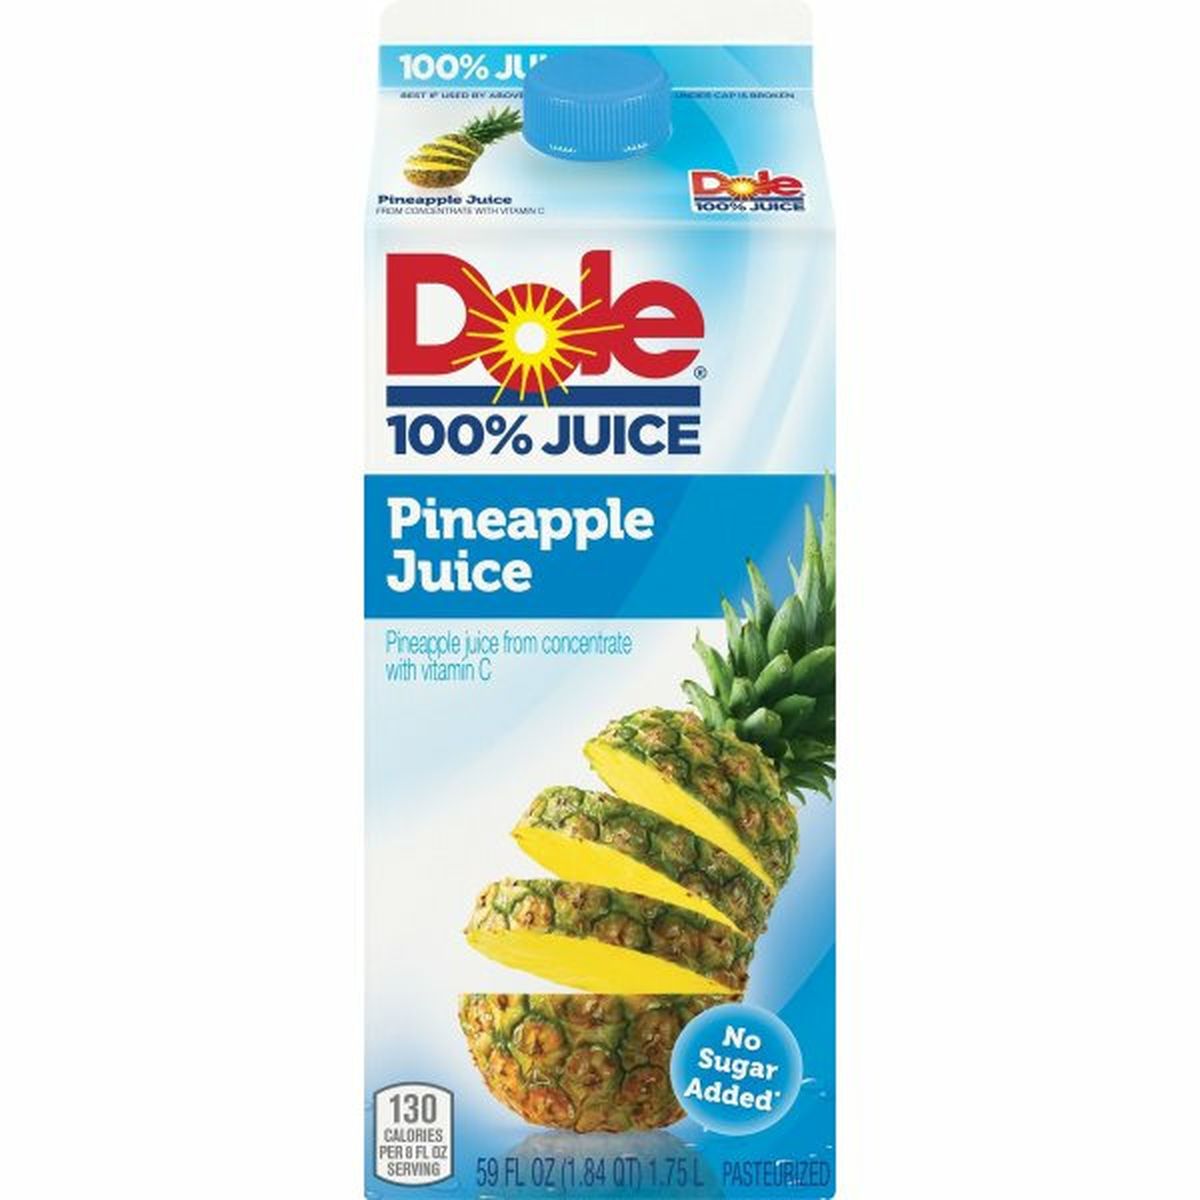 Calories in Dole 100% Juice 100% Juice, Pineapple